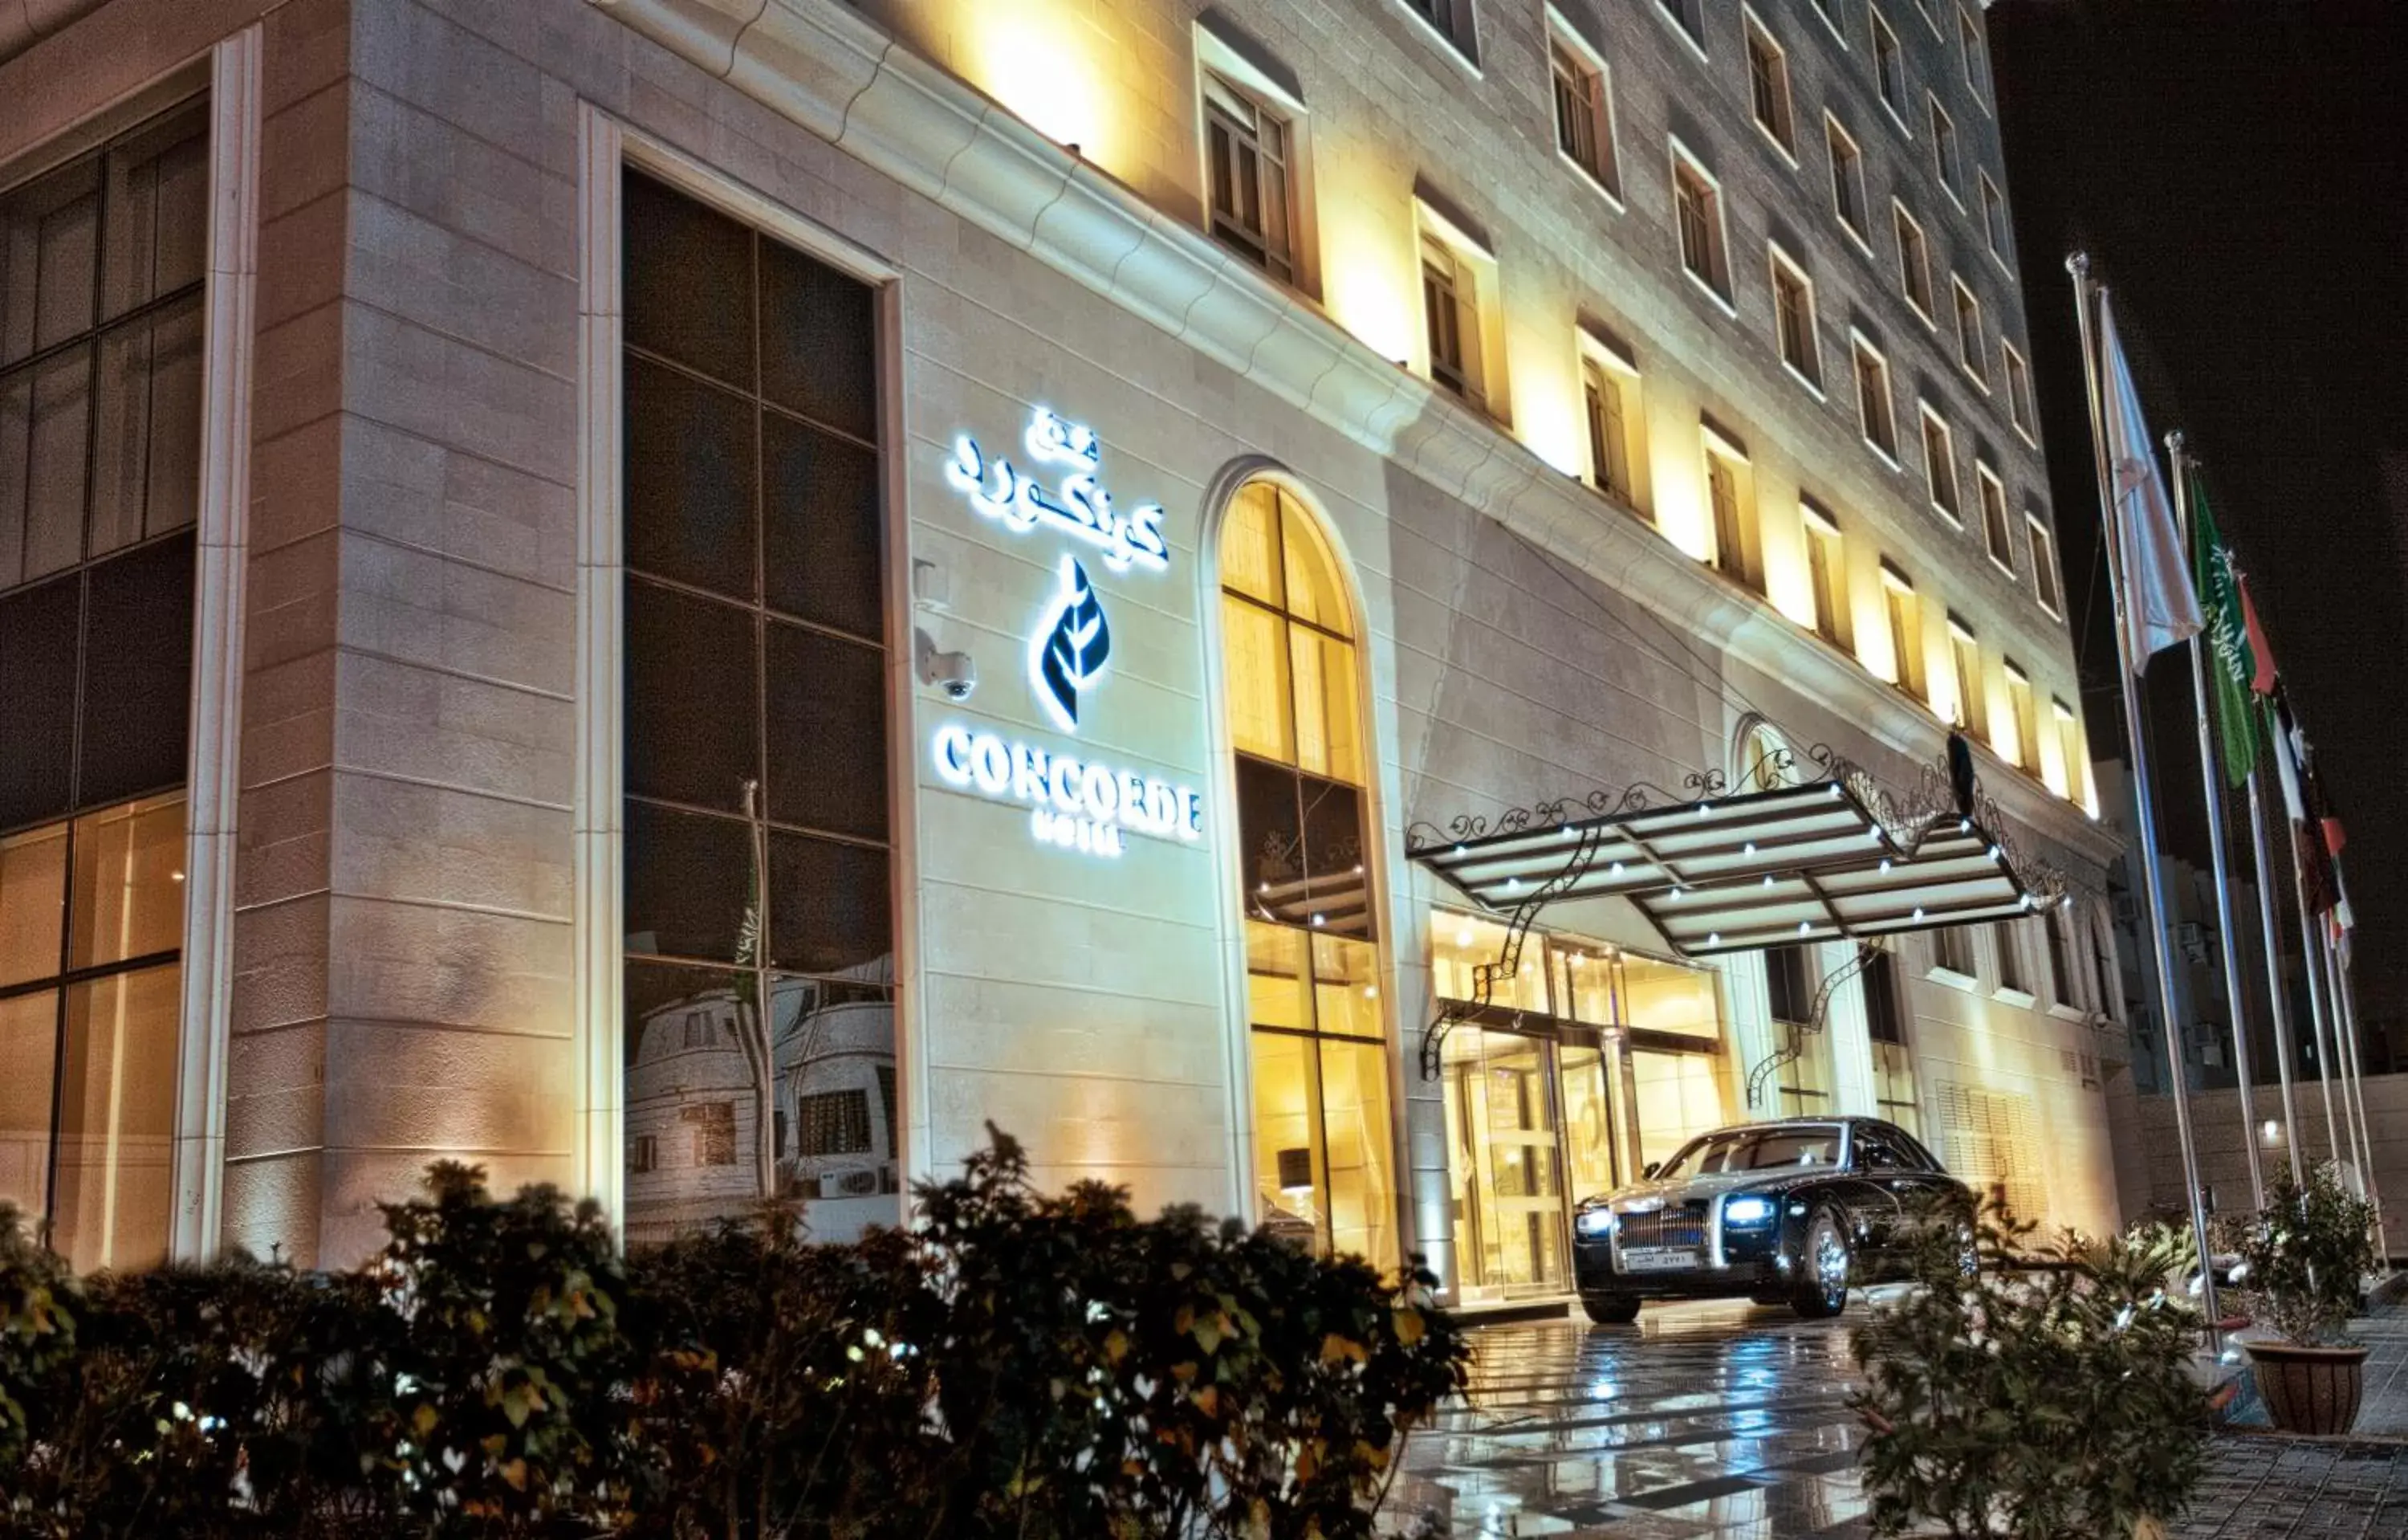 Property building in Concorde Hotel Doha